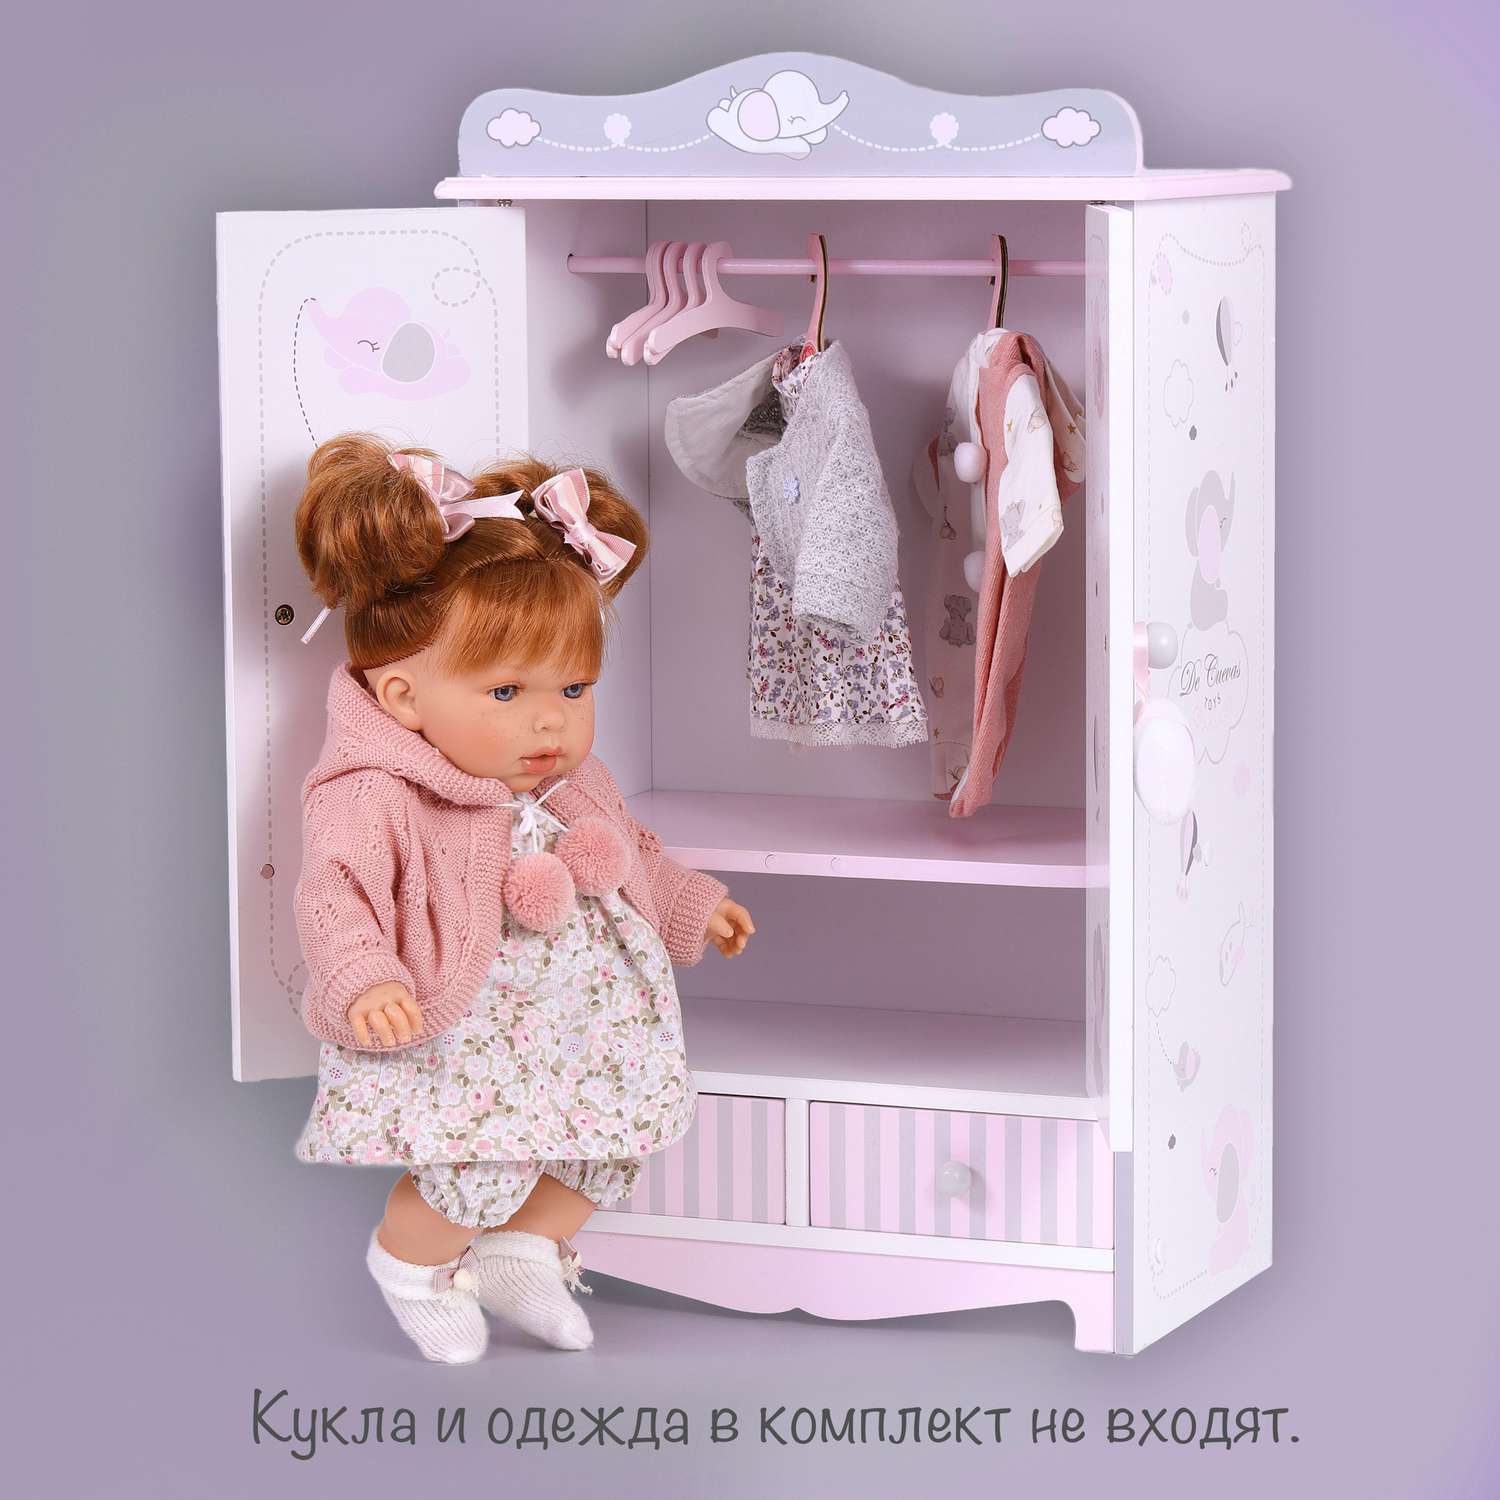 Мебель для кукол: купить в Украине на доске объявлений Клубок (ранее Клумба)